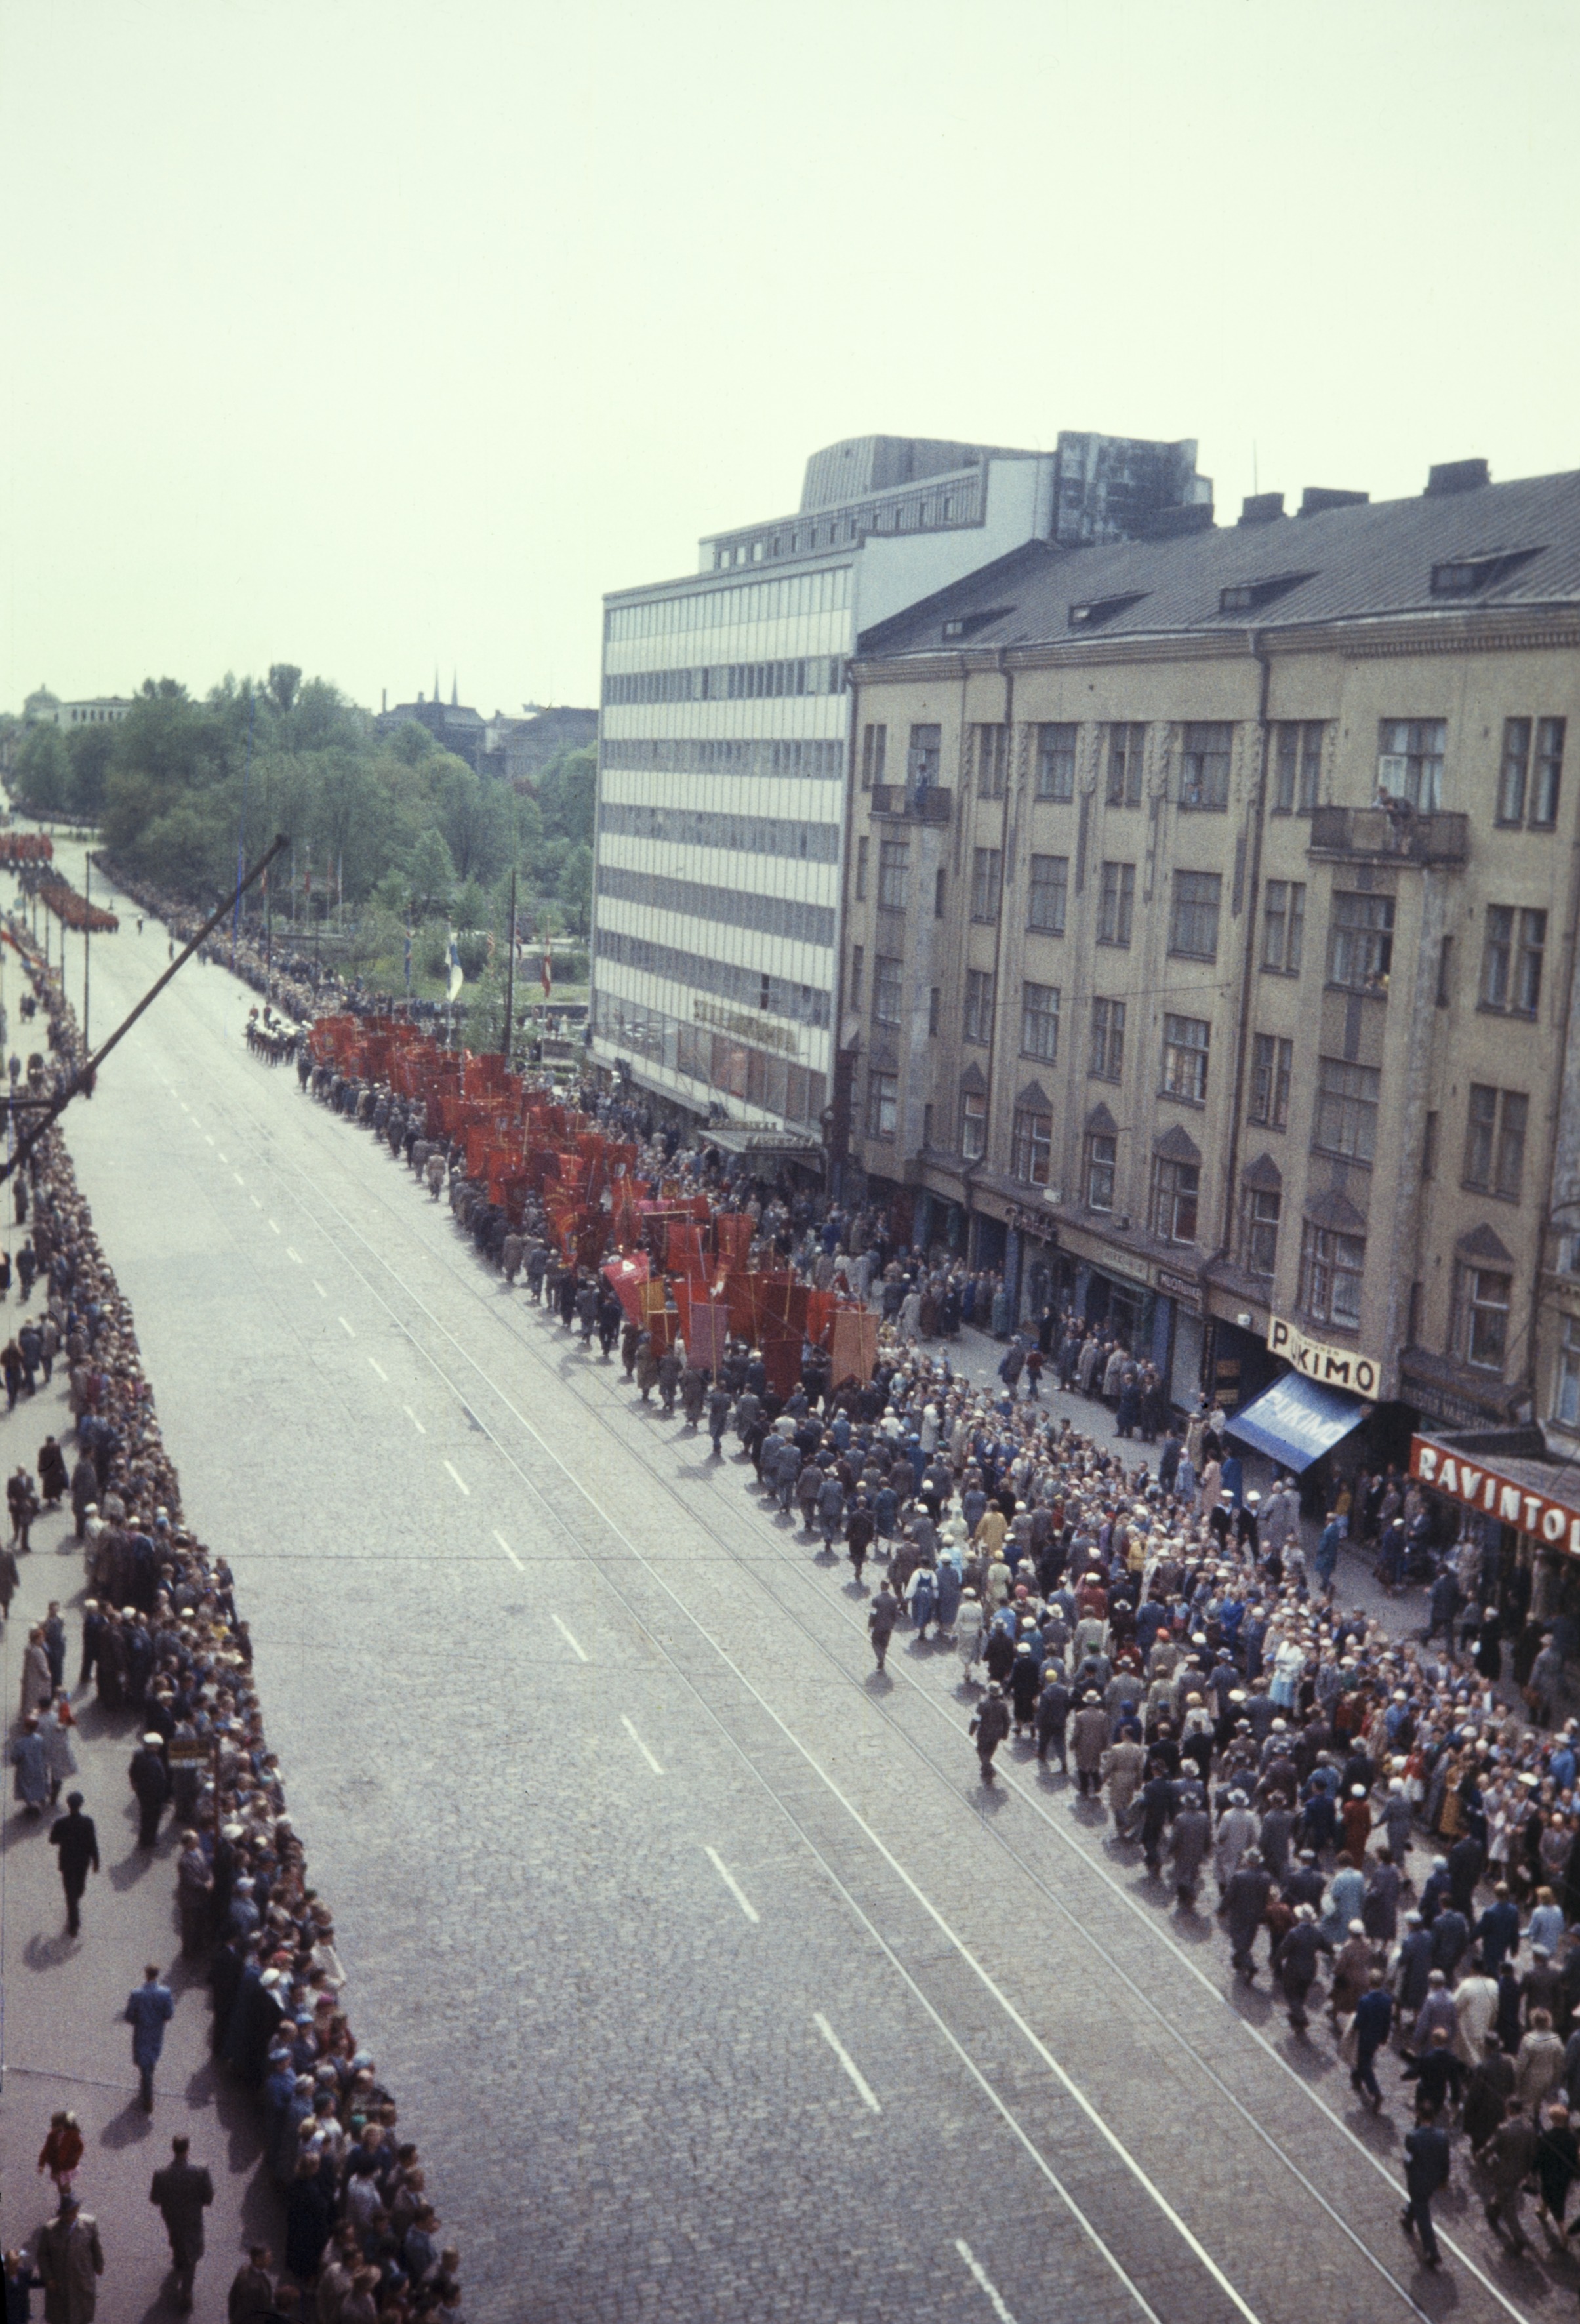 Elanto-lehti. Helluntai 1957, Siltasaarenkatu. Valtakunnallisen ammattiyhdistyslikkeen SAK:n  50-vuotisjuhla. Juhlakulkue marssi ammattiyhdistysliikkeiden lippujen johtamana viisitoistatuhantisena, juhlavana rivistönä läpi Helsingin. Pääjuhla pidettiin stadionilla.